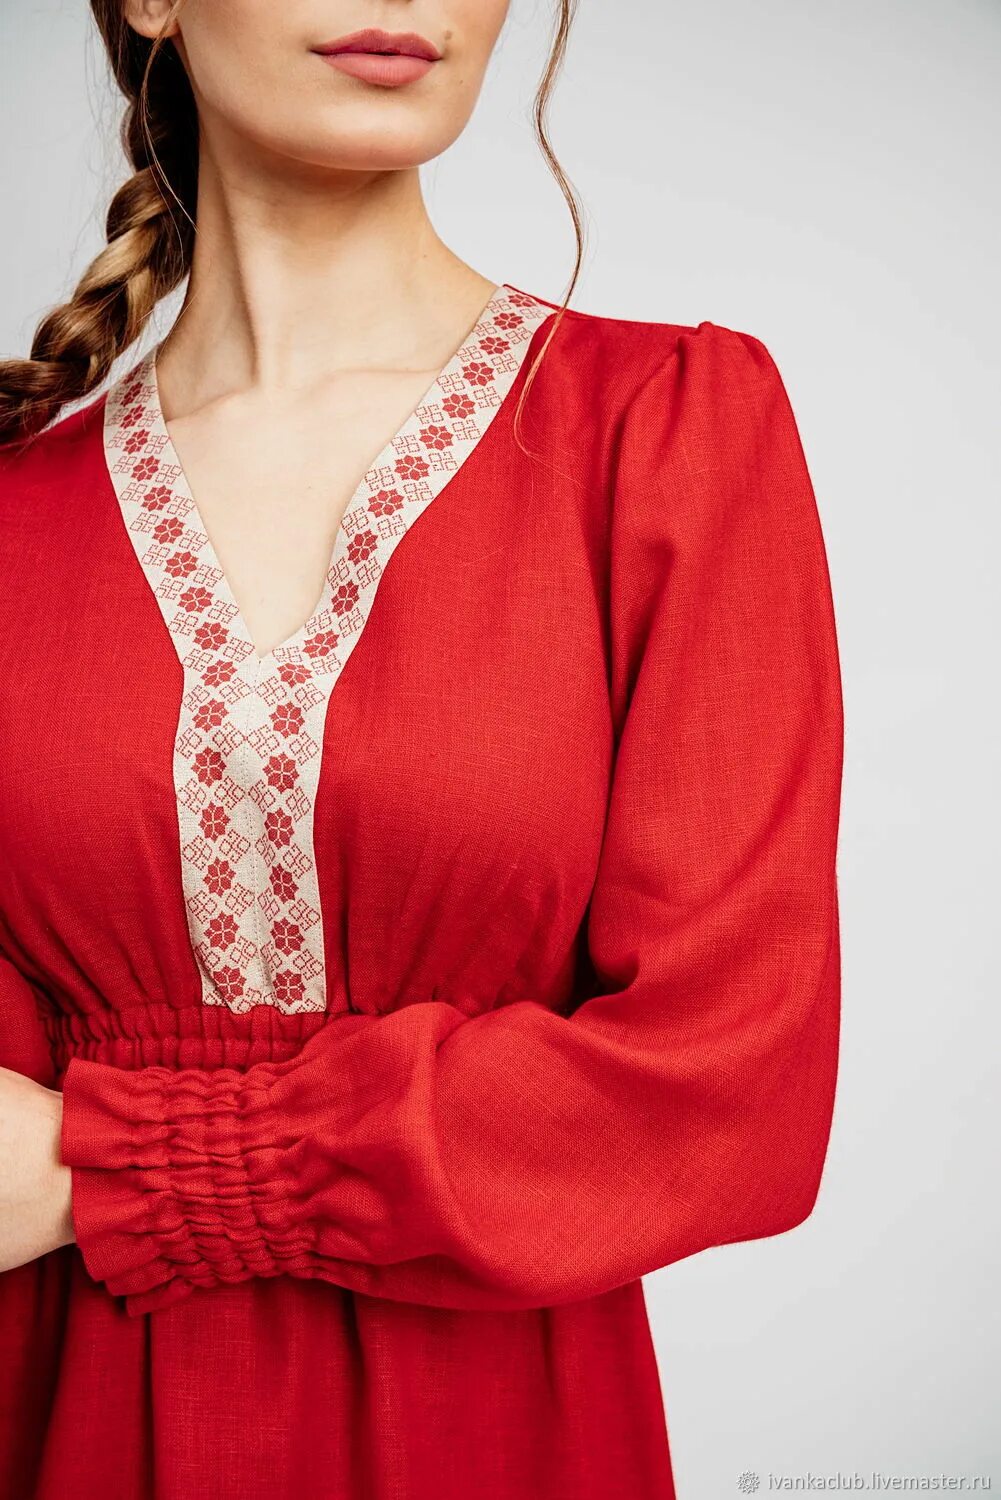 Красное платье лен. Льняное платье в русском стиле. Красное платье в русском стиле. Красное льняное платье.